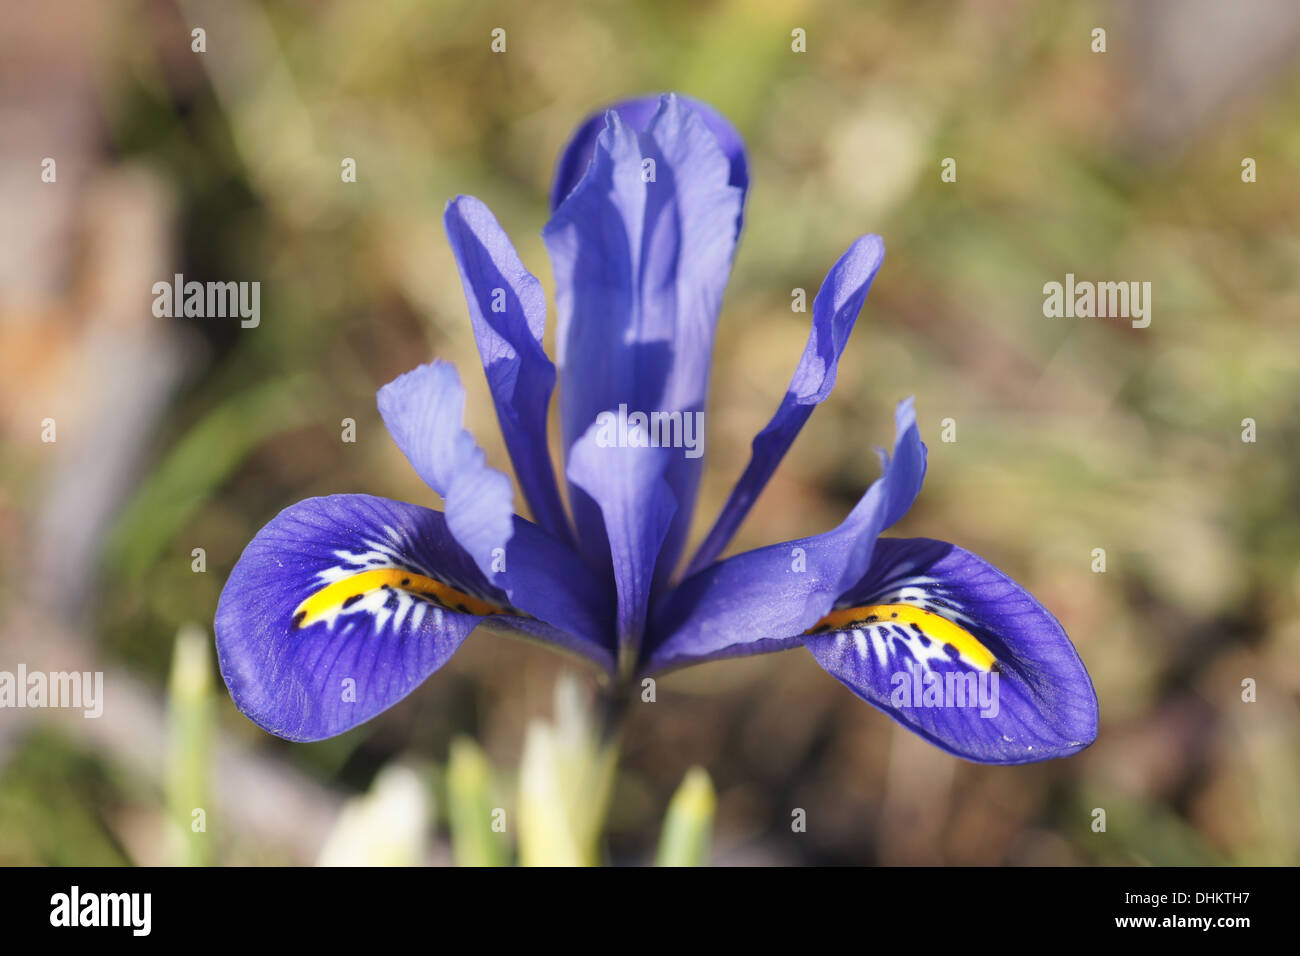 Dwarf iris Stock Photo